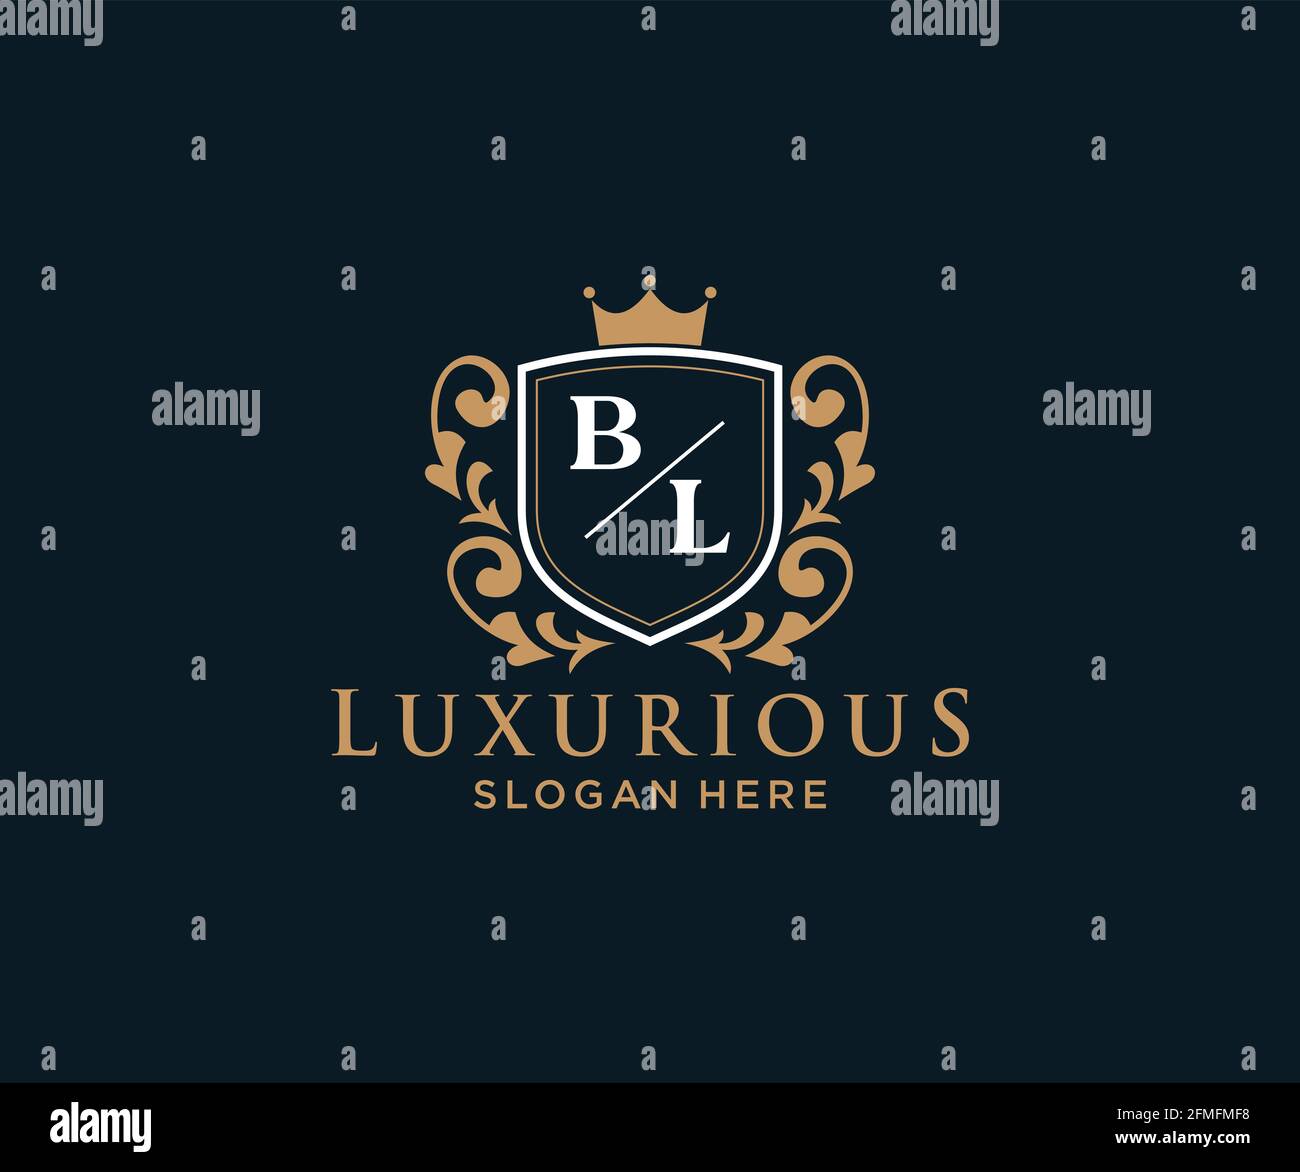 BL Buchstabe Royal Luxury Logo Vorlage in Vektorgrafik für Restaurant, Royalty, Boutique, Cafe, Hotel, Heraldisch, Schmuck, Mode und andere Vektor illustrr Stock Vektor